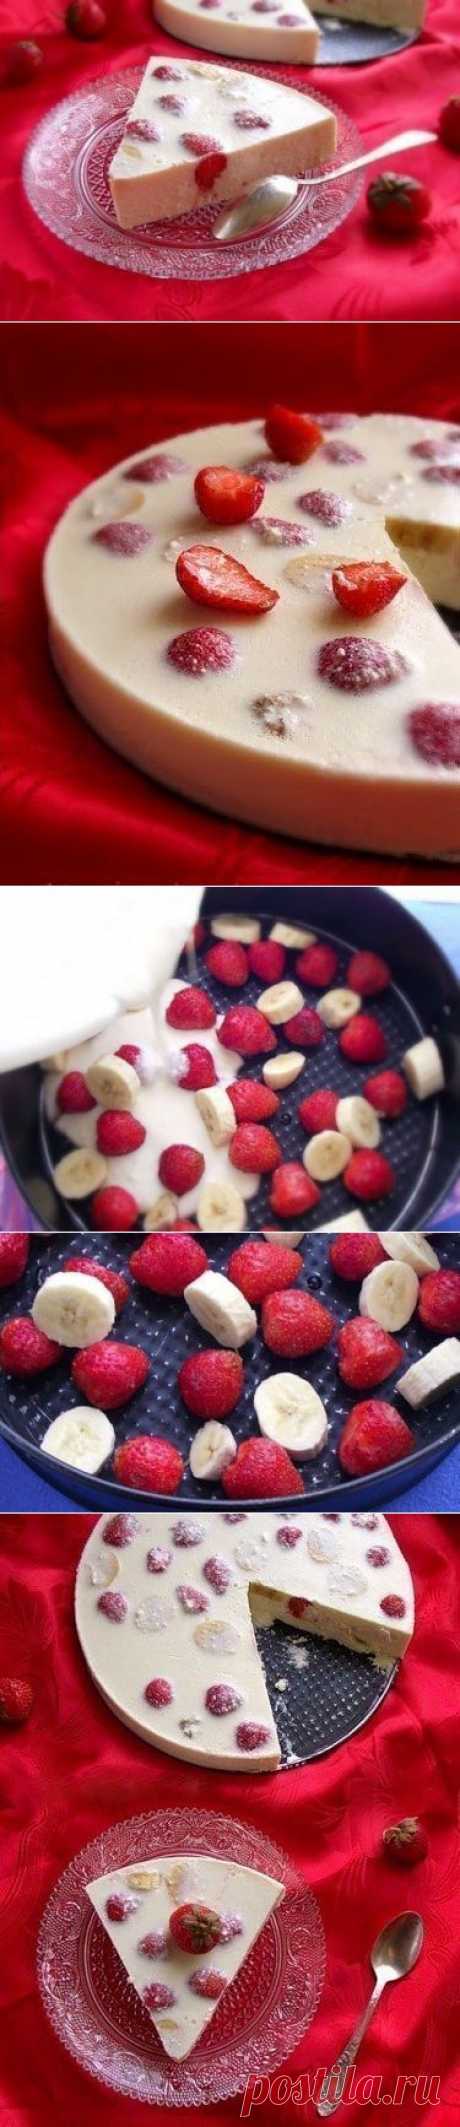 Как приготовить творожно-фруктовый десерт (вкусно и легко) - рецепт, ингридиенты и фотографии